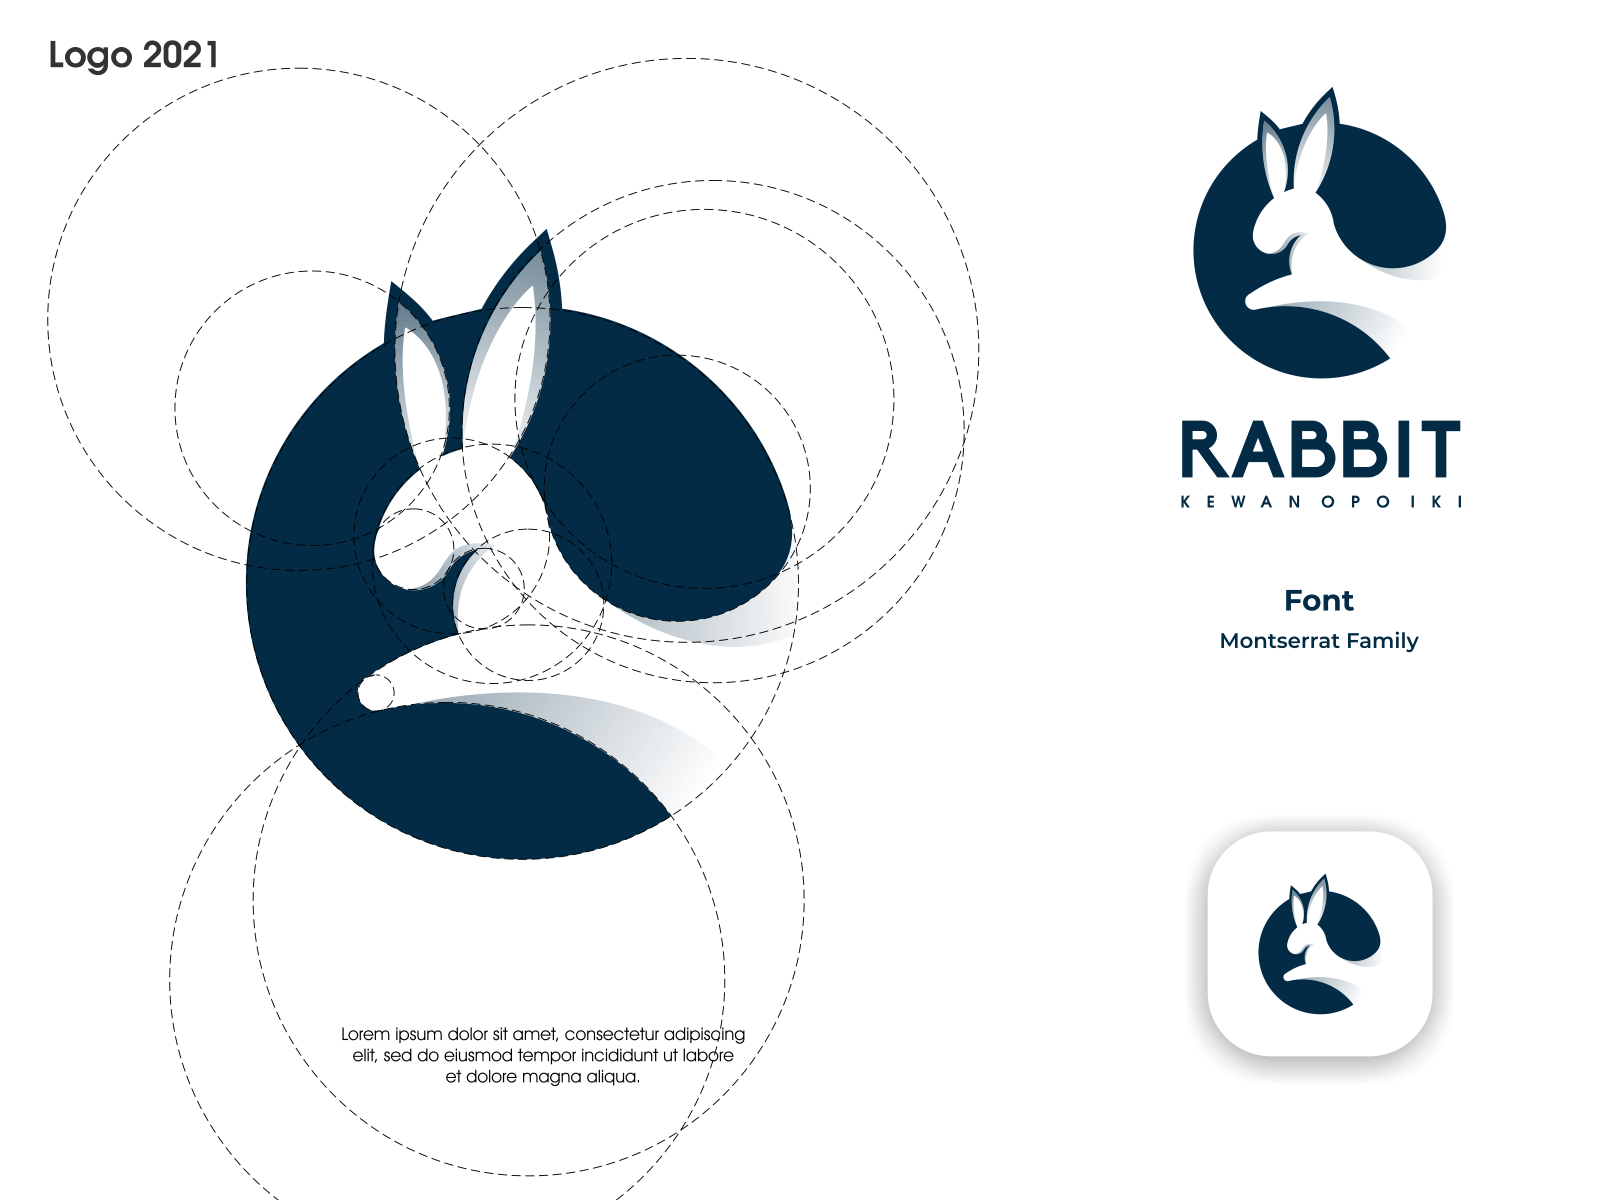 Rabbit Logo, Logos ft. illustration & rabbit - Envato Elements